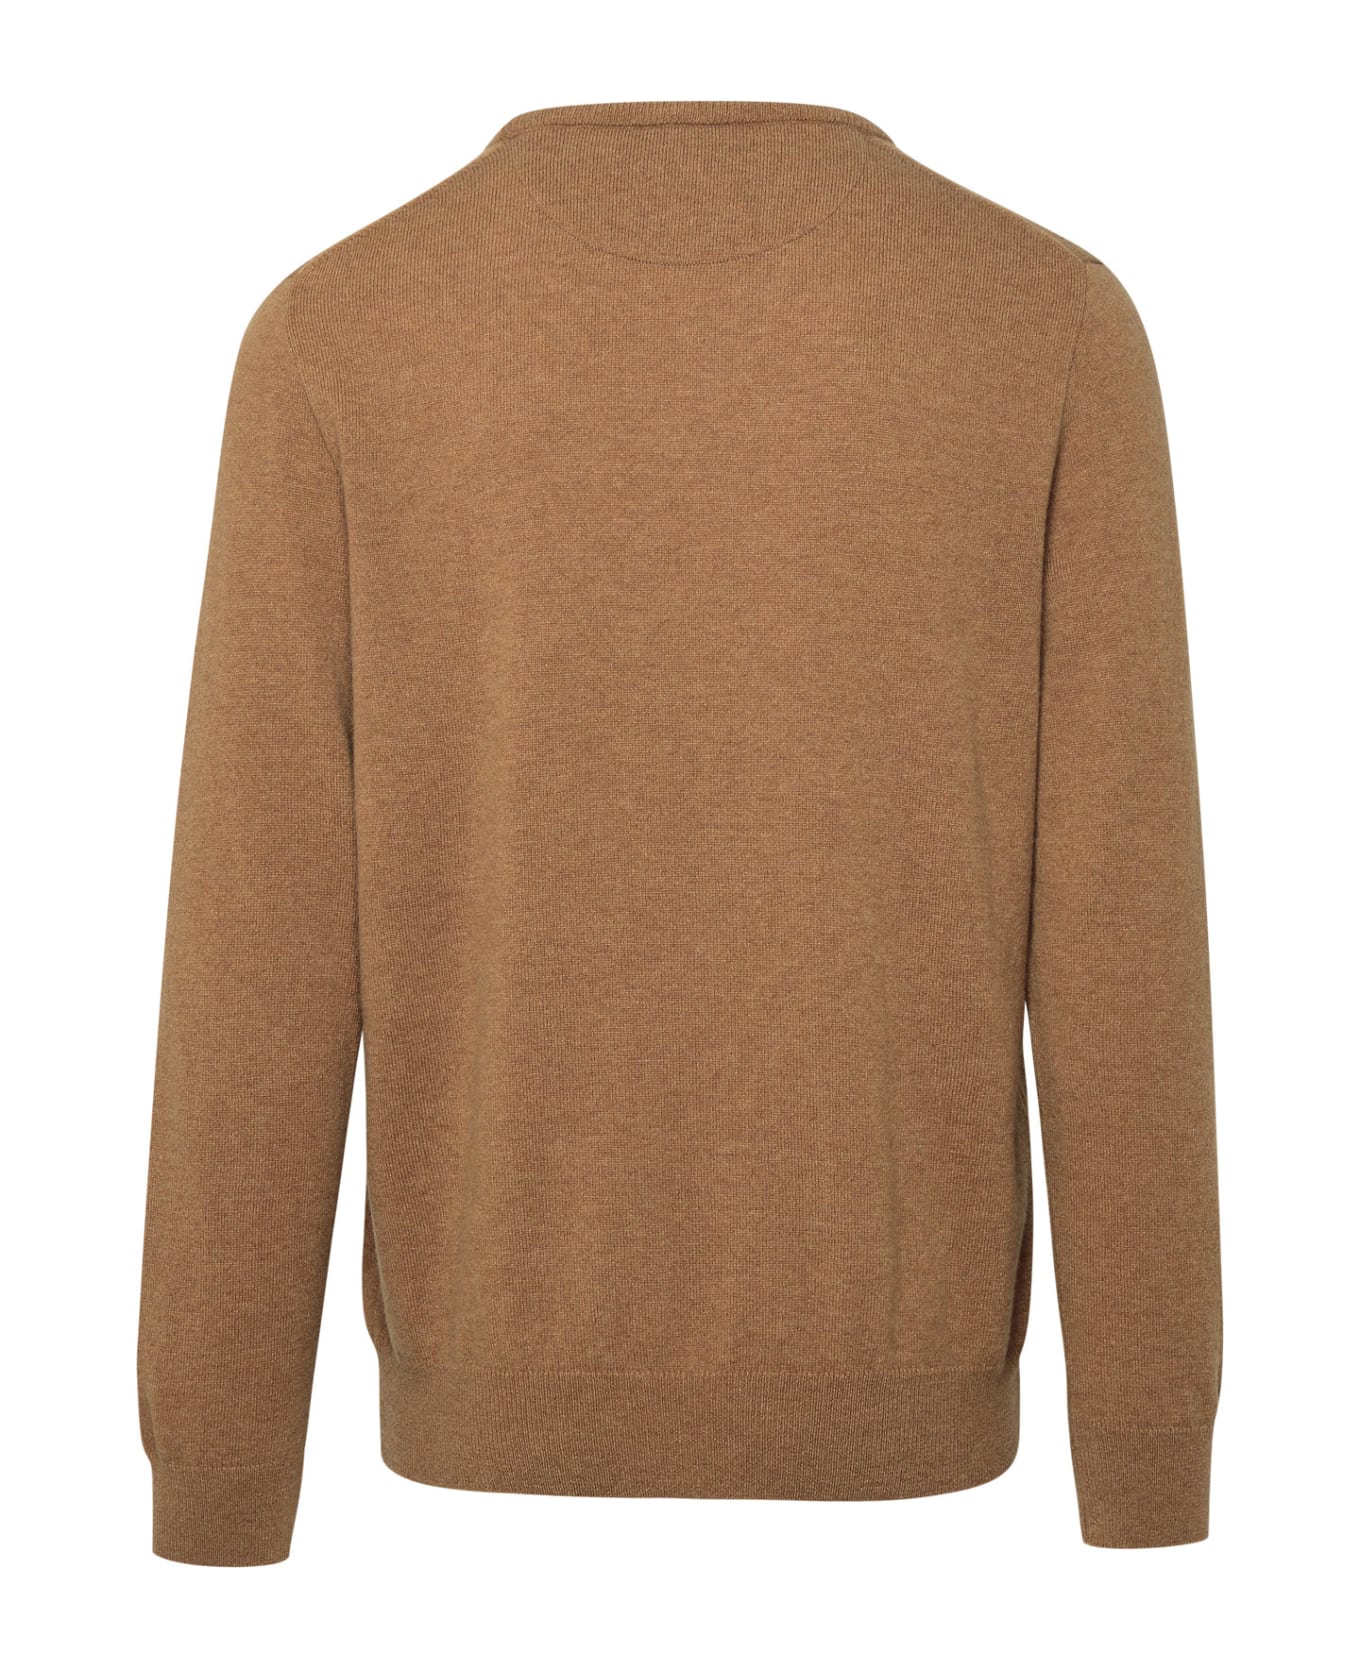 Ralph Lauren Beige Wool Sweater